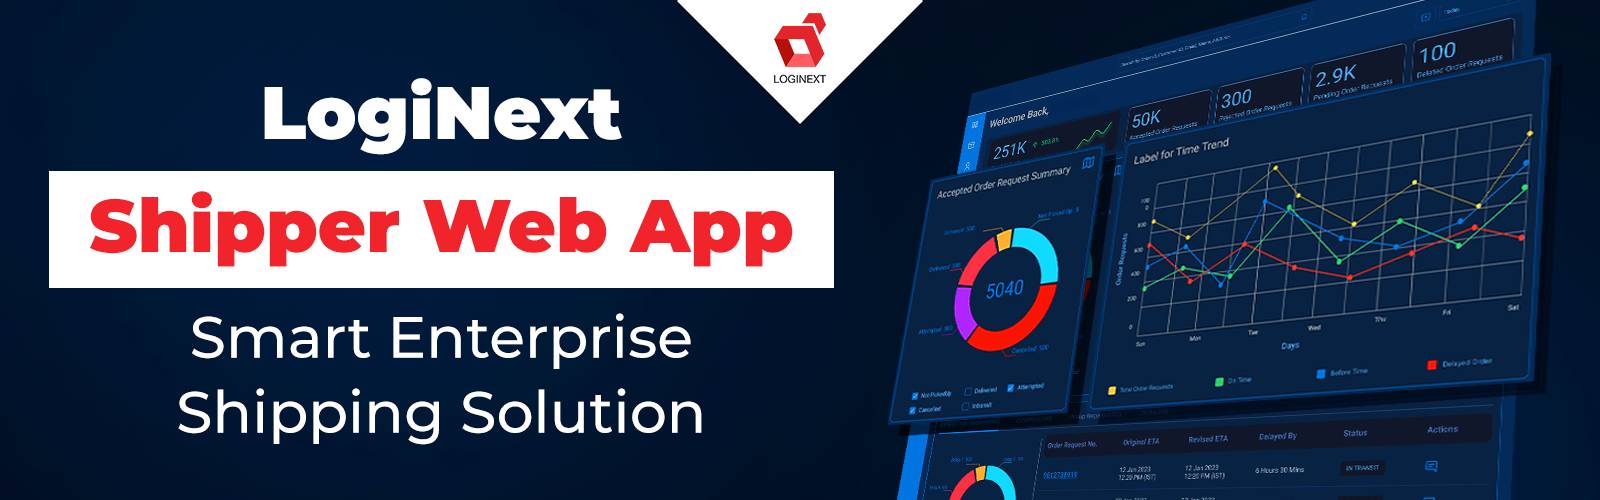 Aplicación web LogiNext Shipper: la mejor aplicación web para remitentes